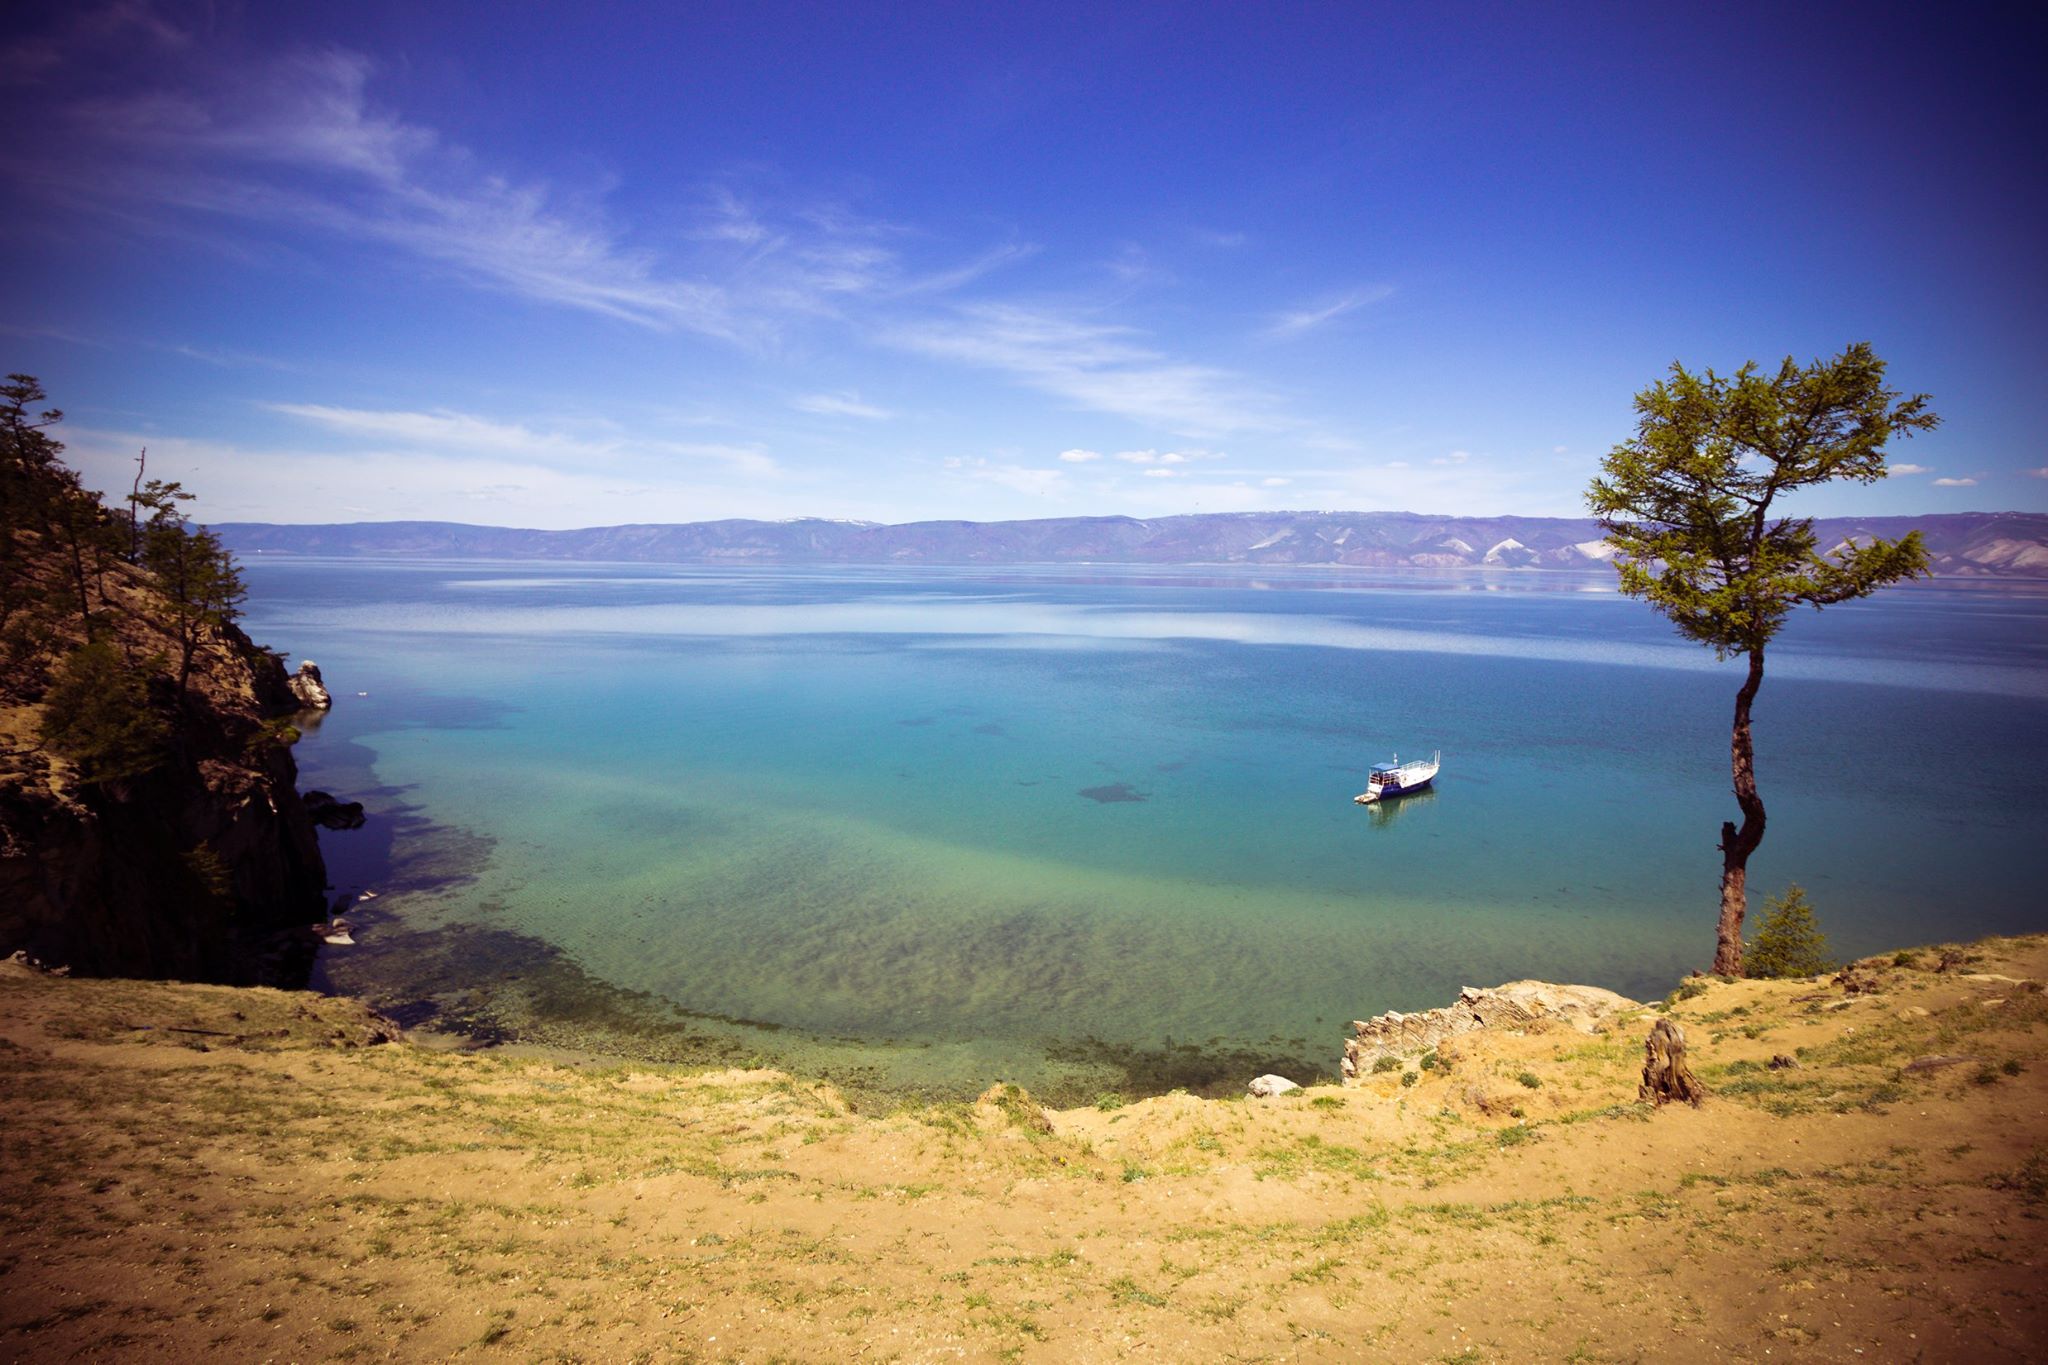 O lago e seus arredores hospedam espécies animais que não podem ser encontradas em outras partes do mundo, e, desde 1996, o Baikal figura entre os lugares da lista de Patrimônio Mundial da Unesco.